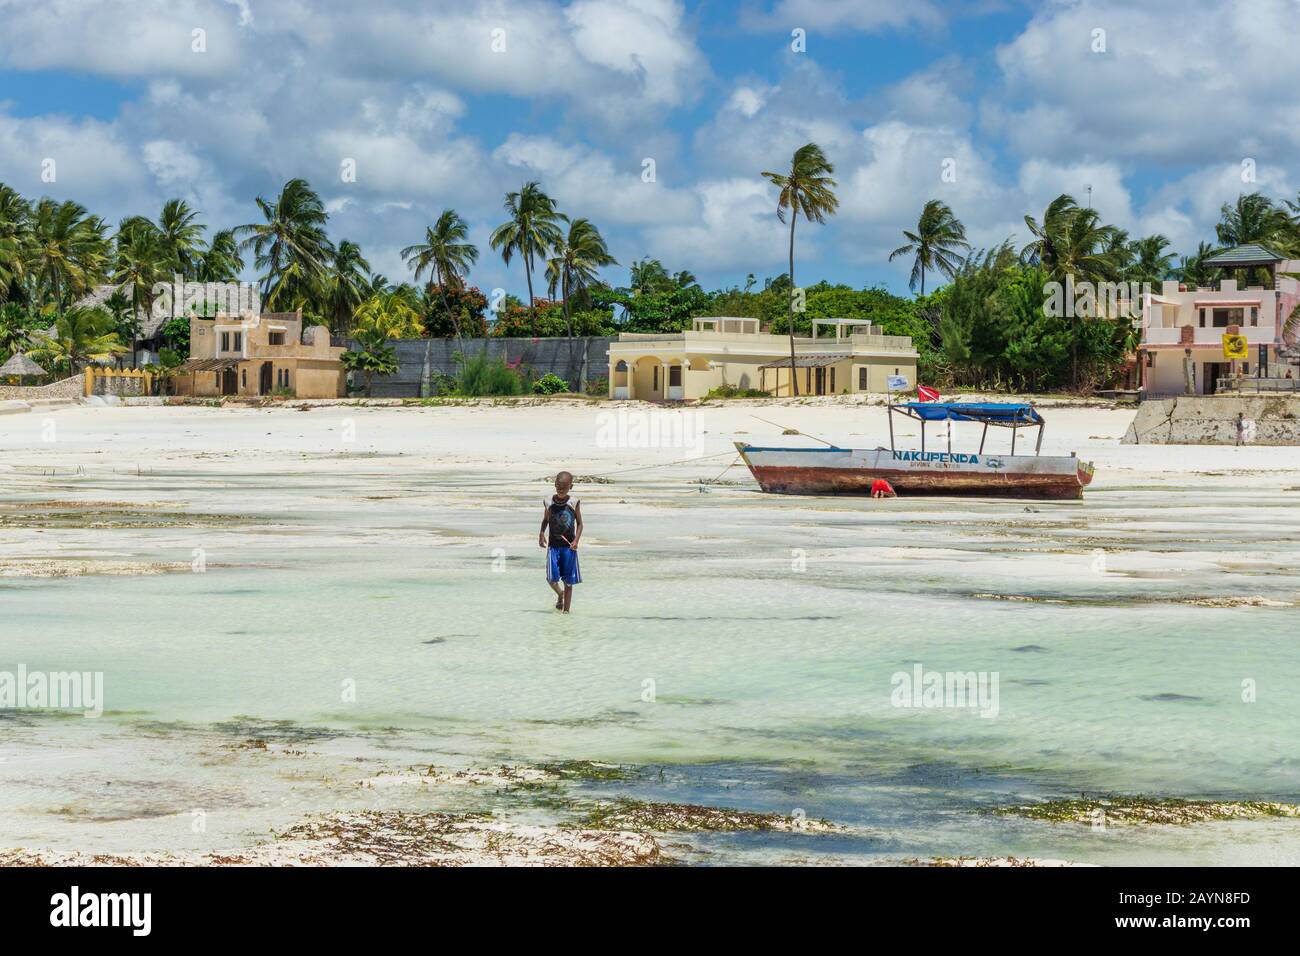 Jambiani, INSEL SANSIBAR, TANSANIA - 25. AUGUST 2019: Bei Ebbe läuft ein Kind am Strand Stockfoto